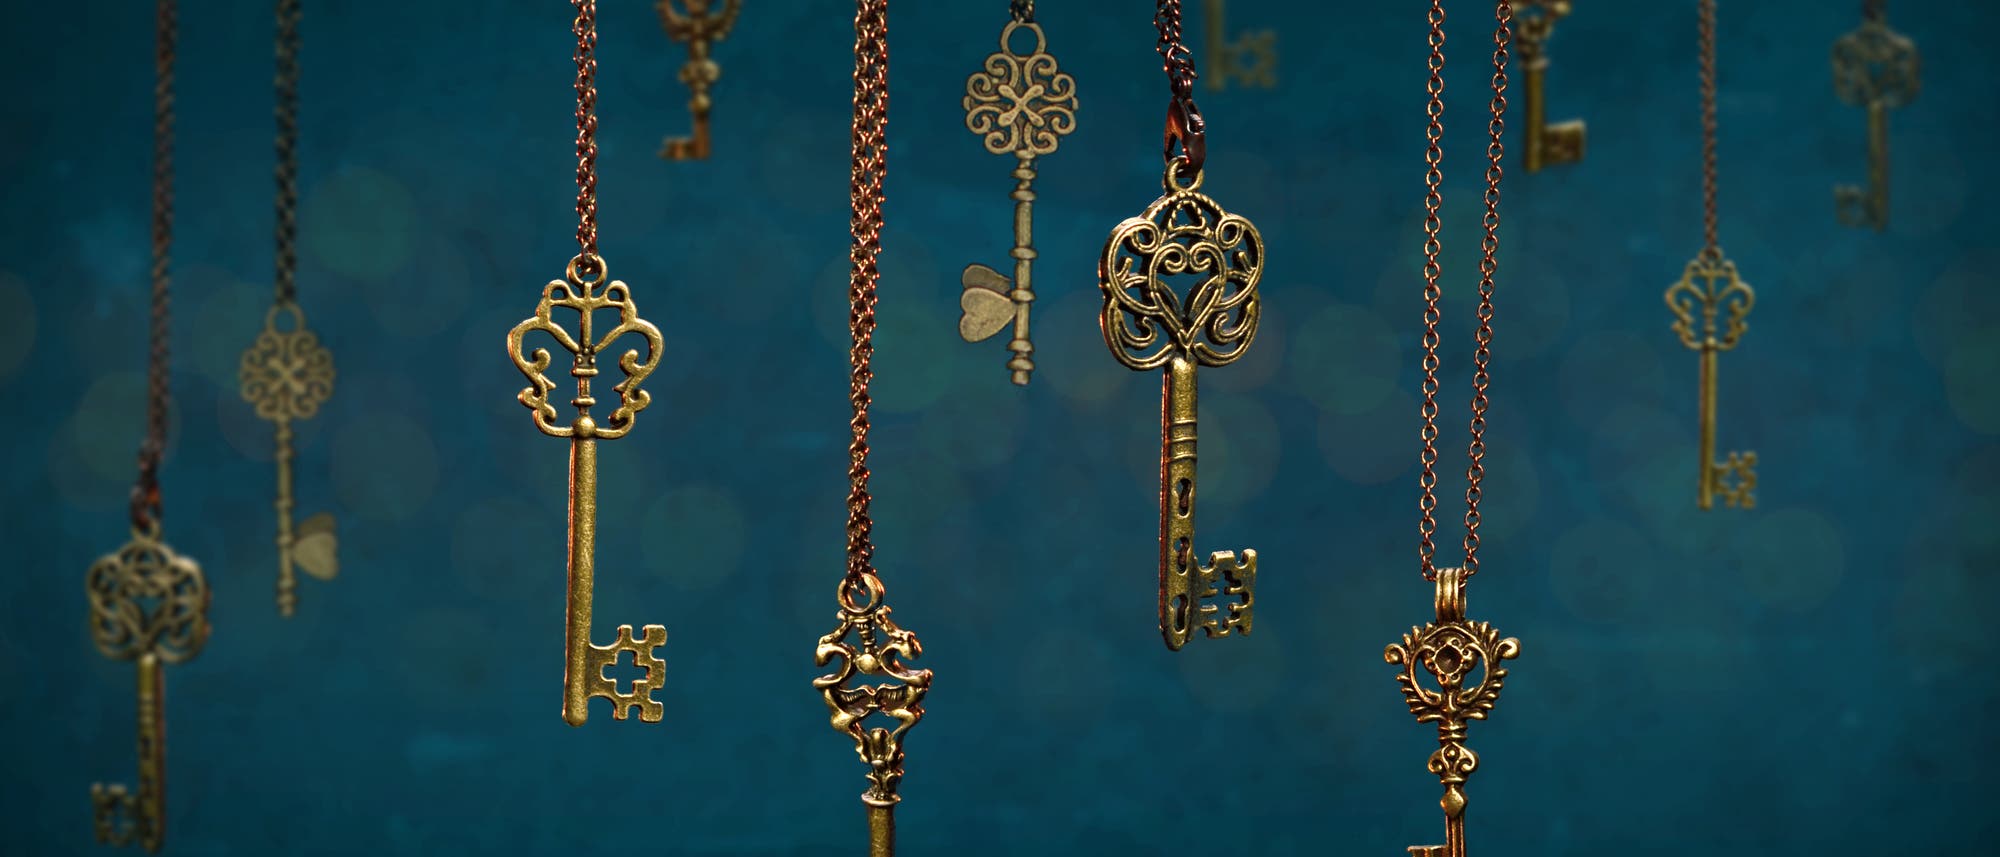 Neun Schlüssel, die an Ketten hängen